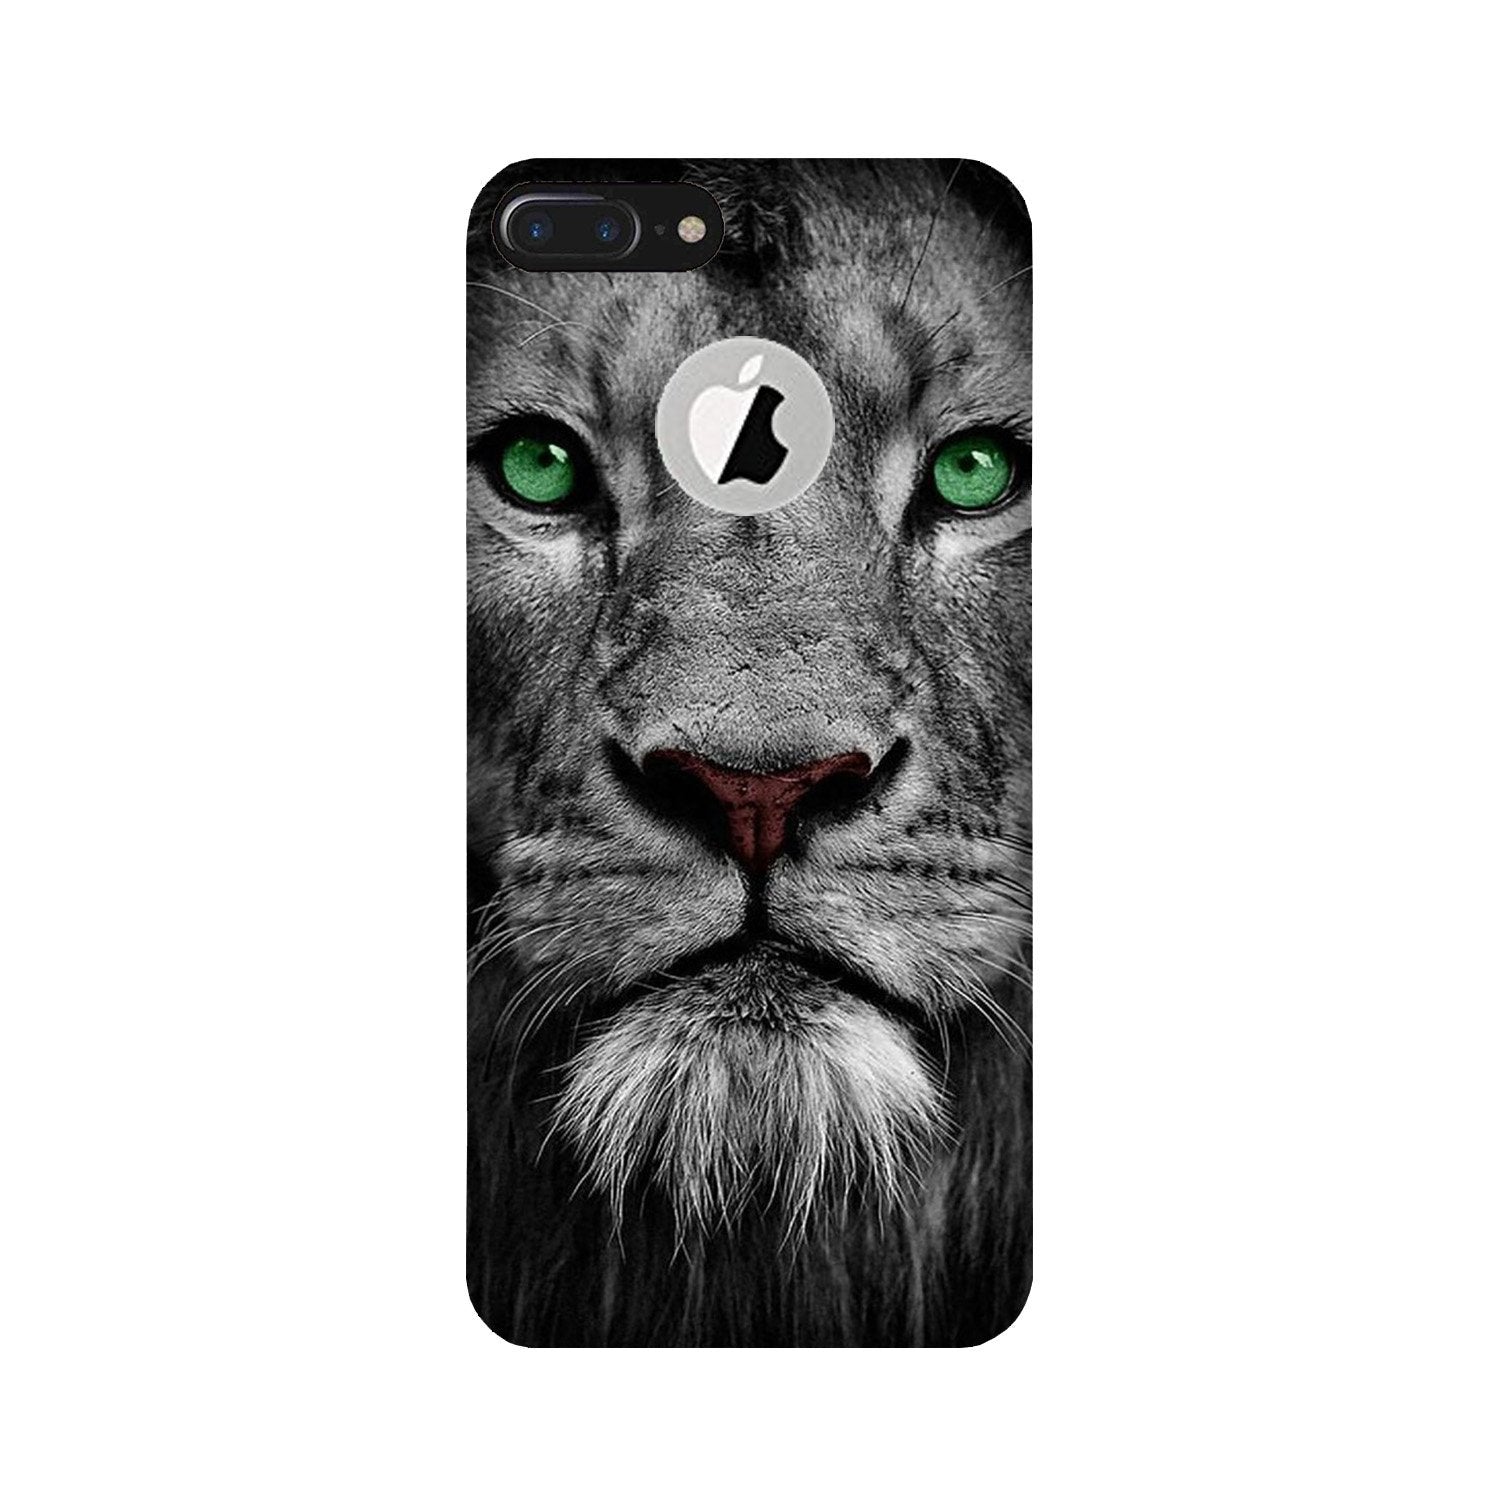 Lion Case for iPhone 7 Plus logo cut (Design No. 272)